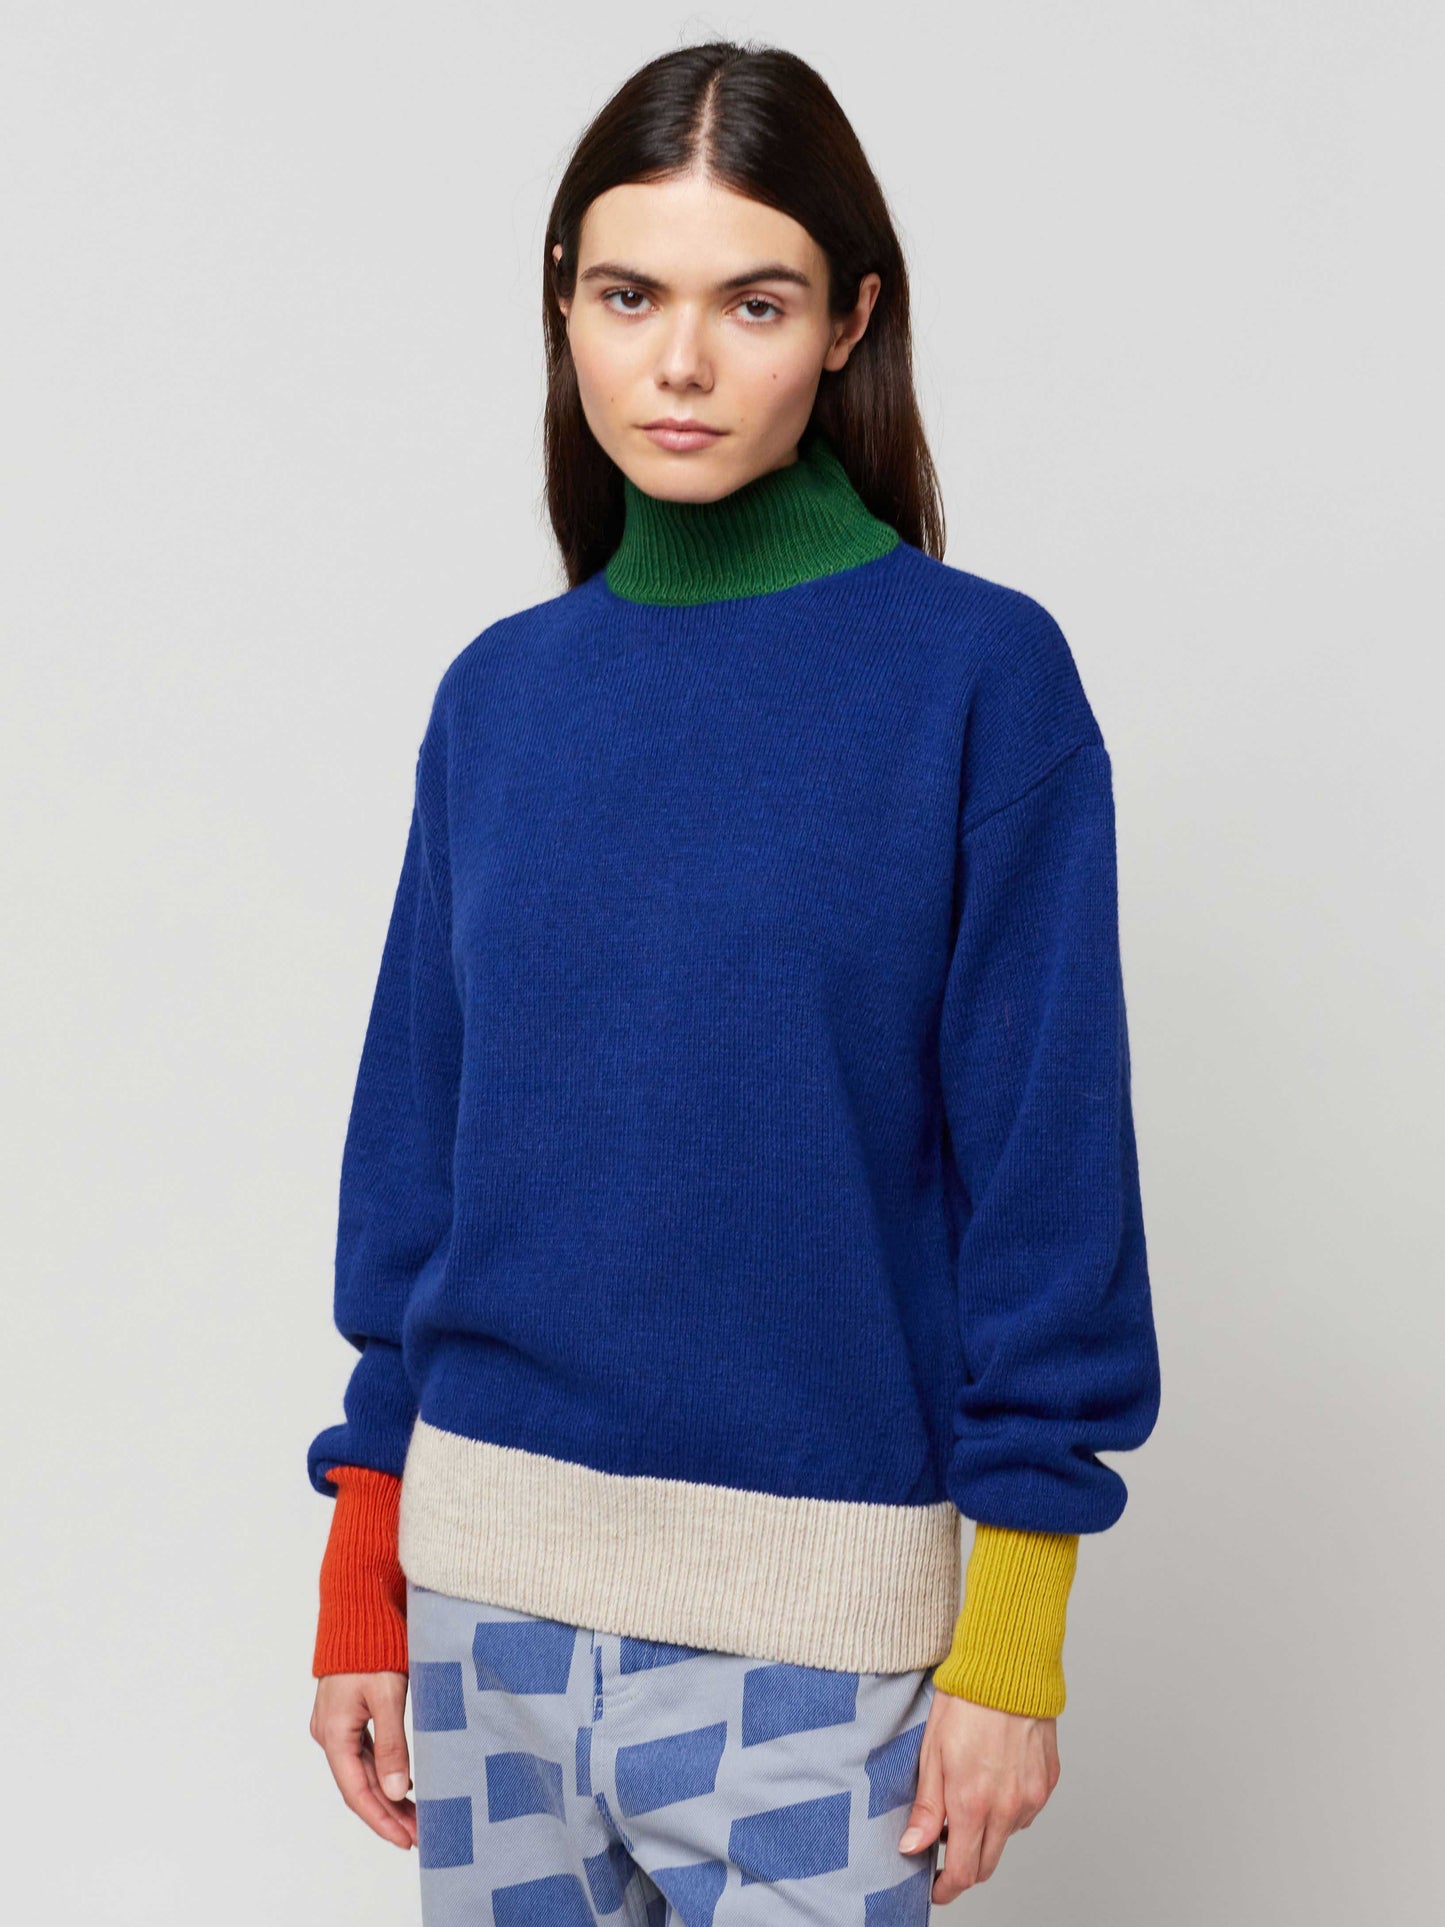 Color Block jumper